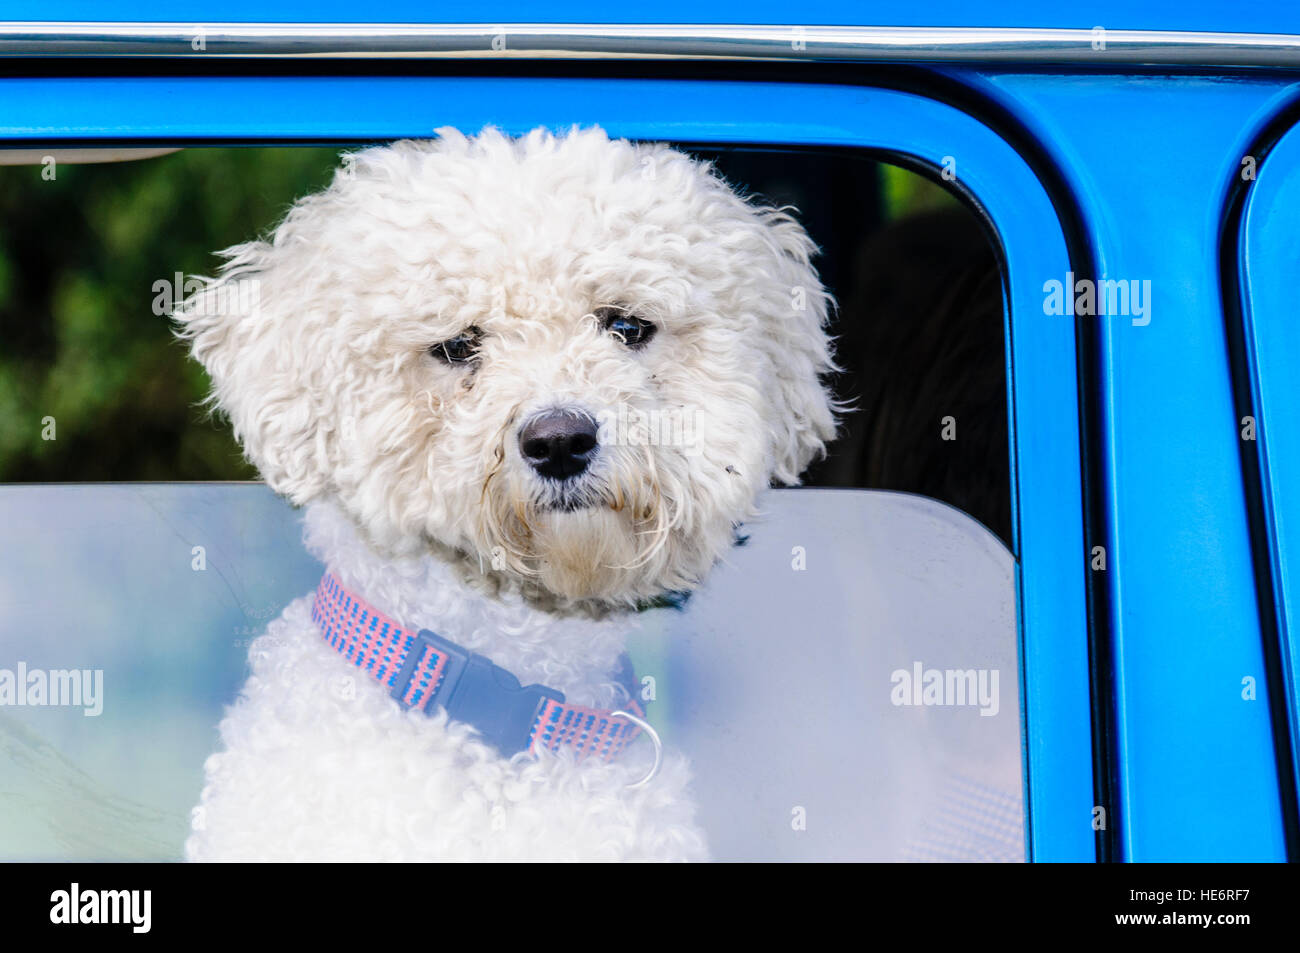 A cute bichon frise dog pokes his head through a car window. Stock Photo